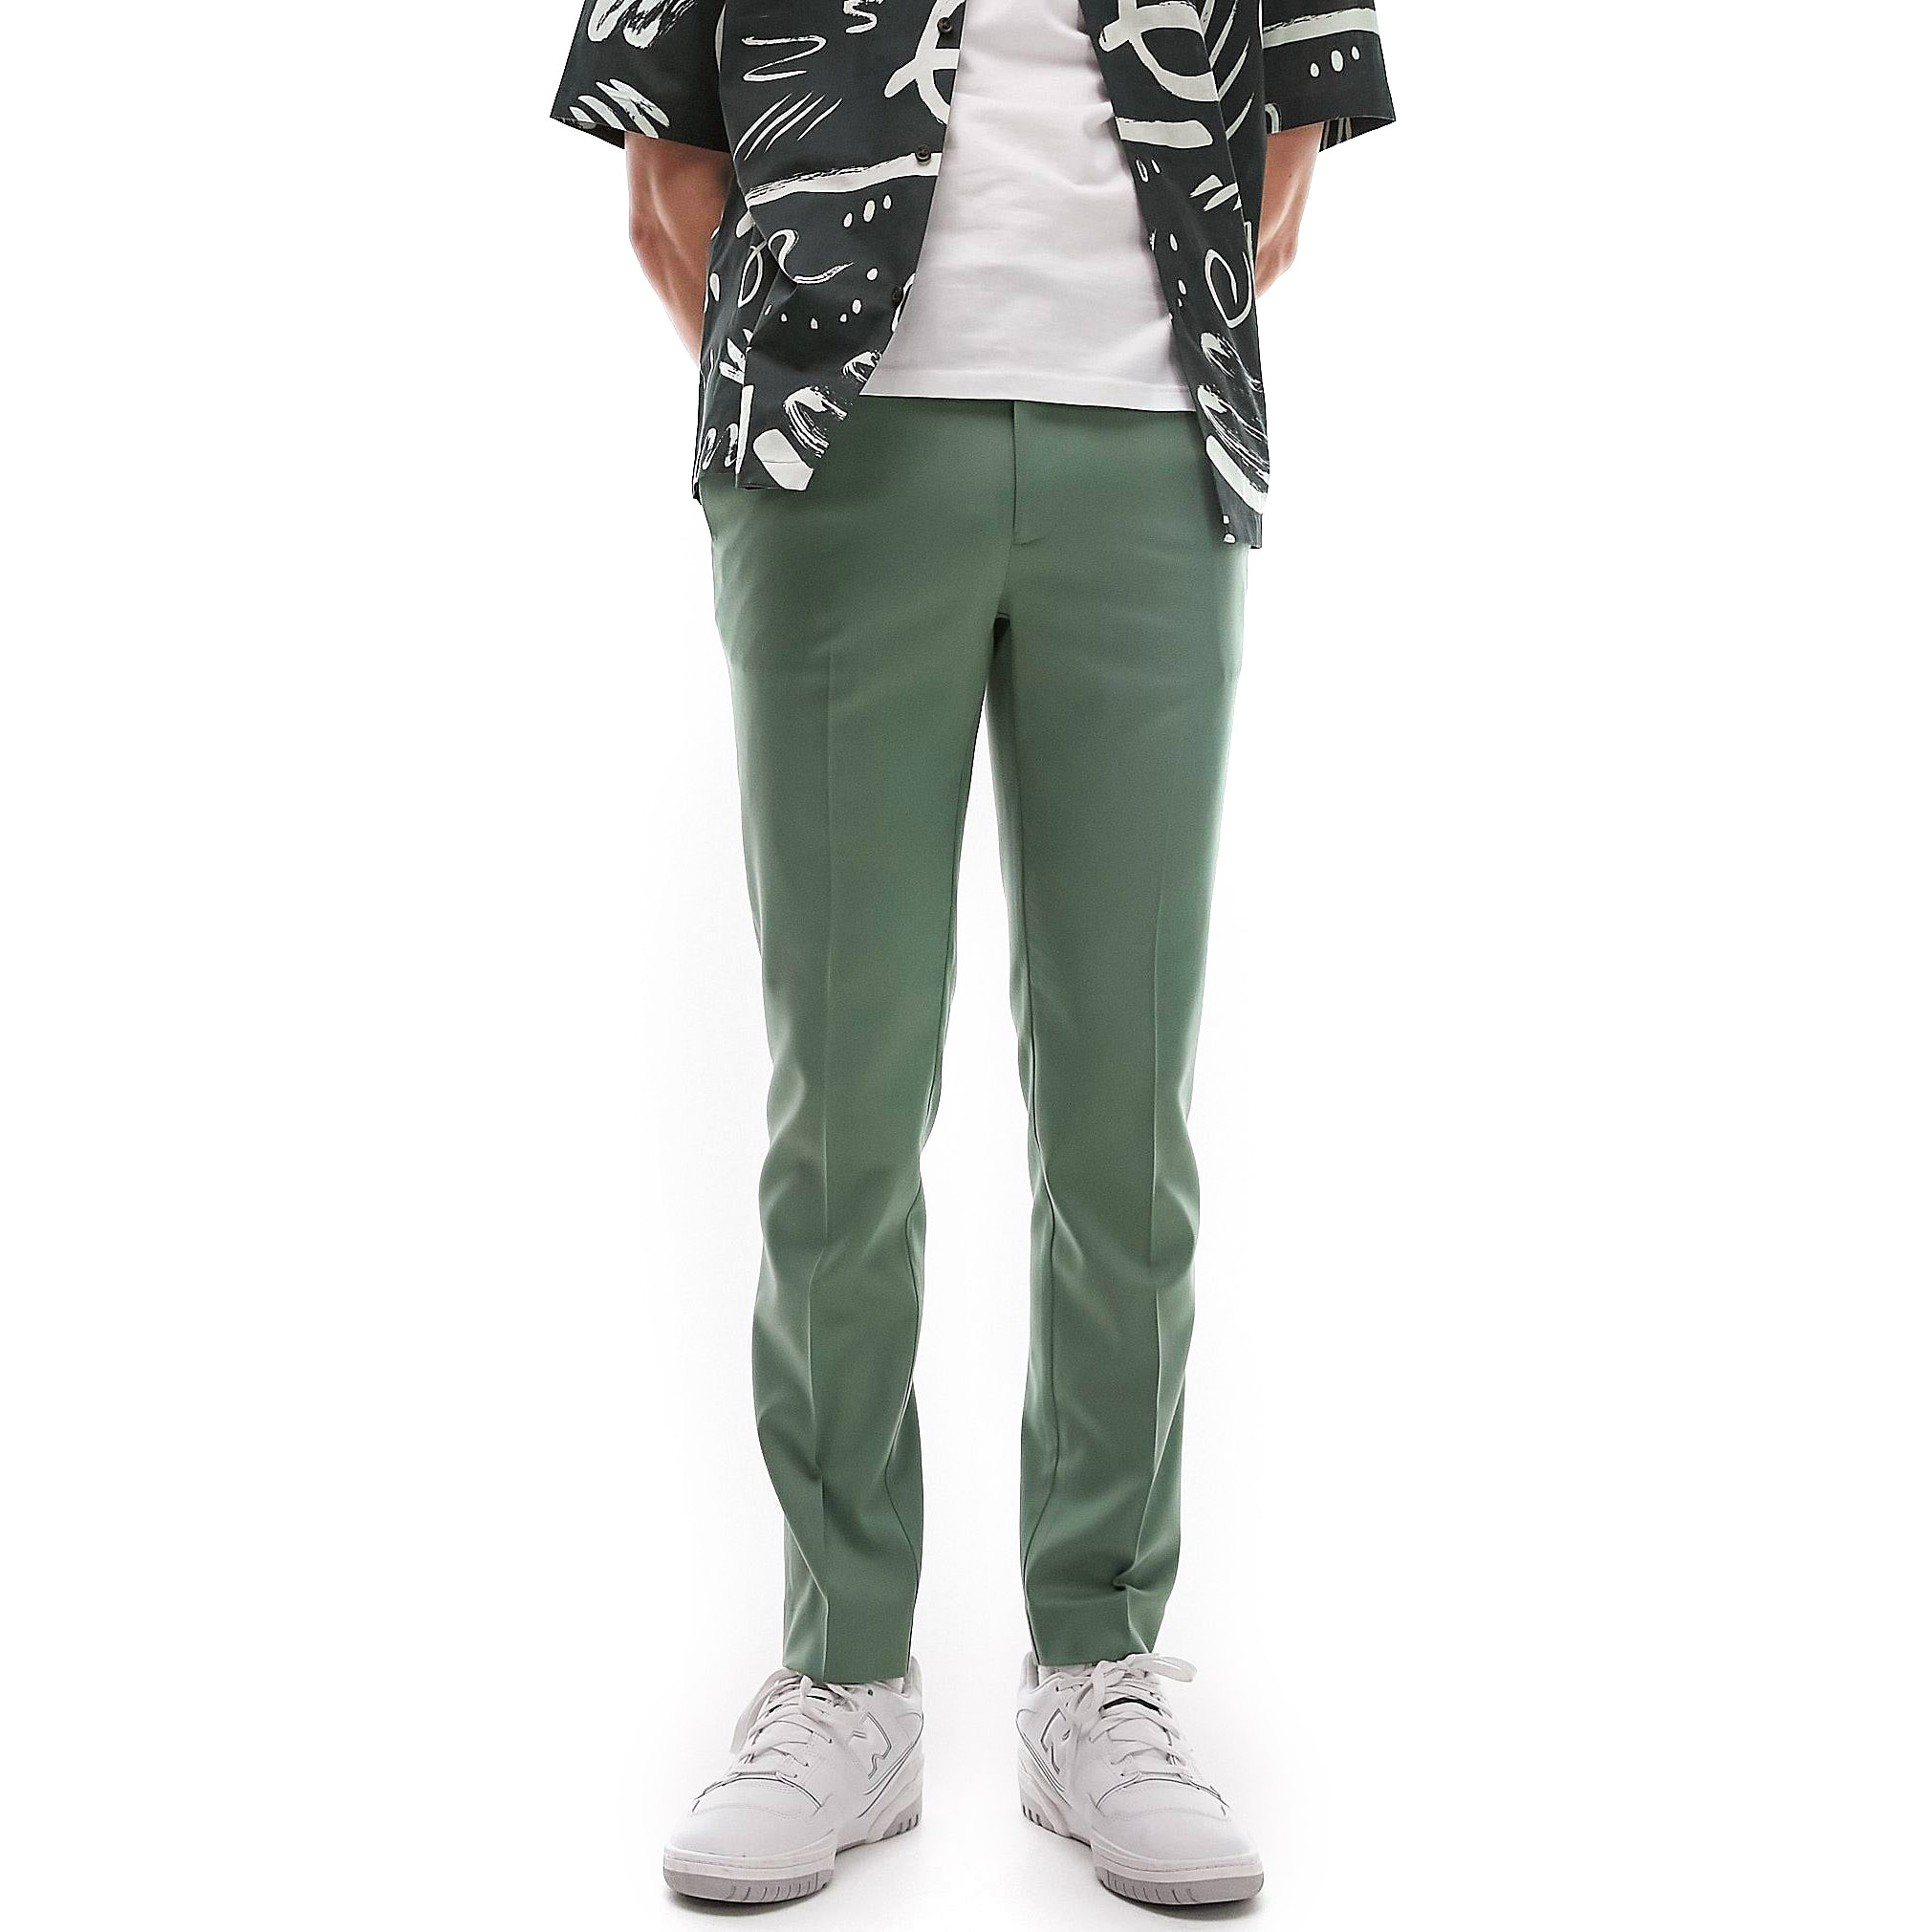 Брюки Topman Skinny Smart With Elastic Waistband, серовато-зеленый серые эластичные зауженные джинсы topman